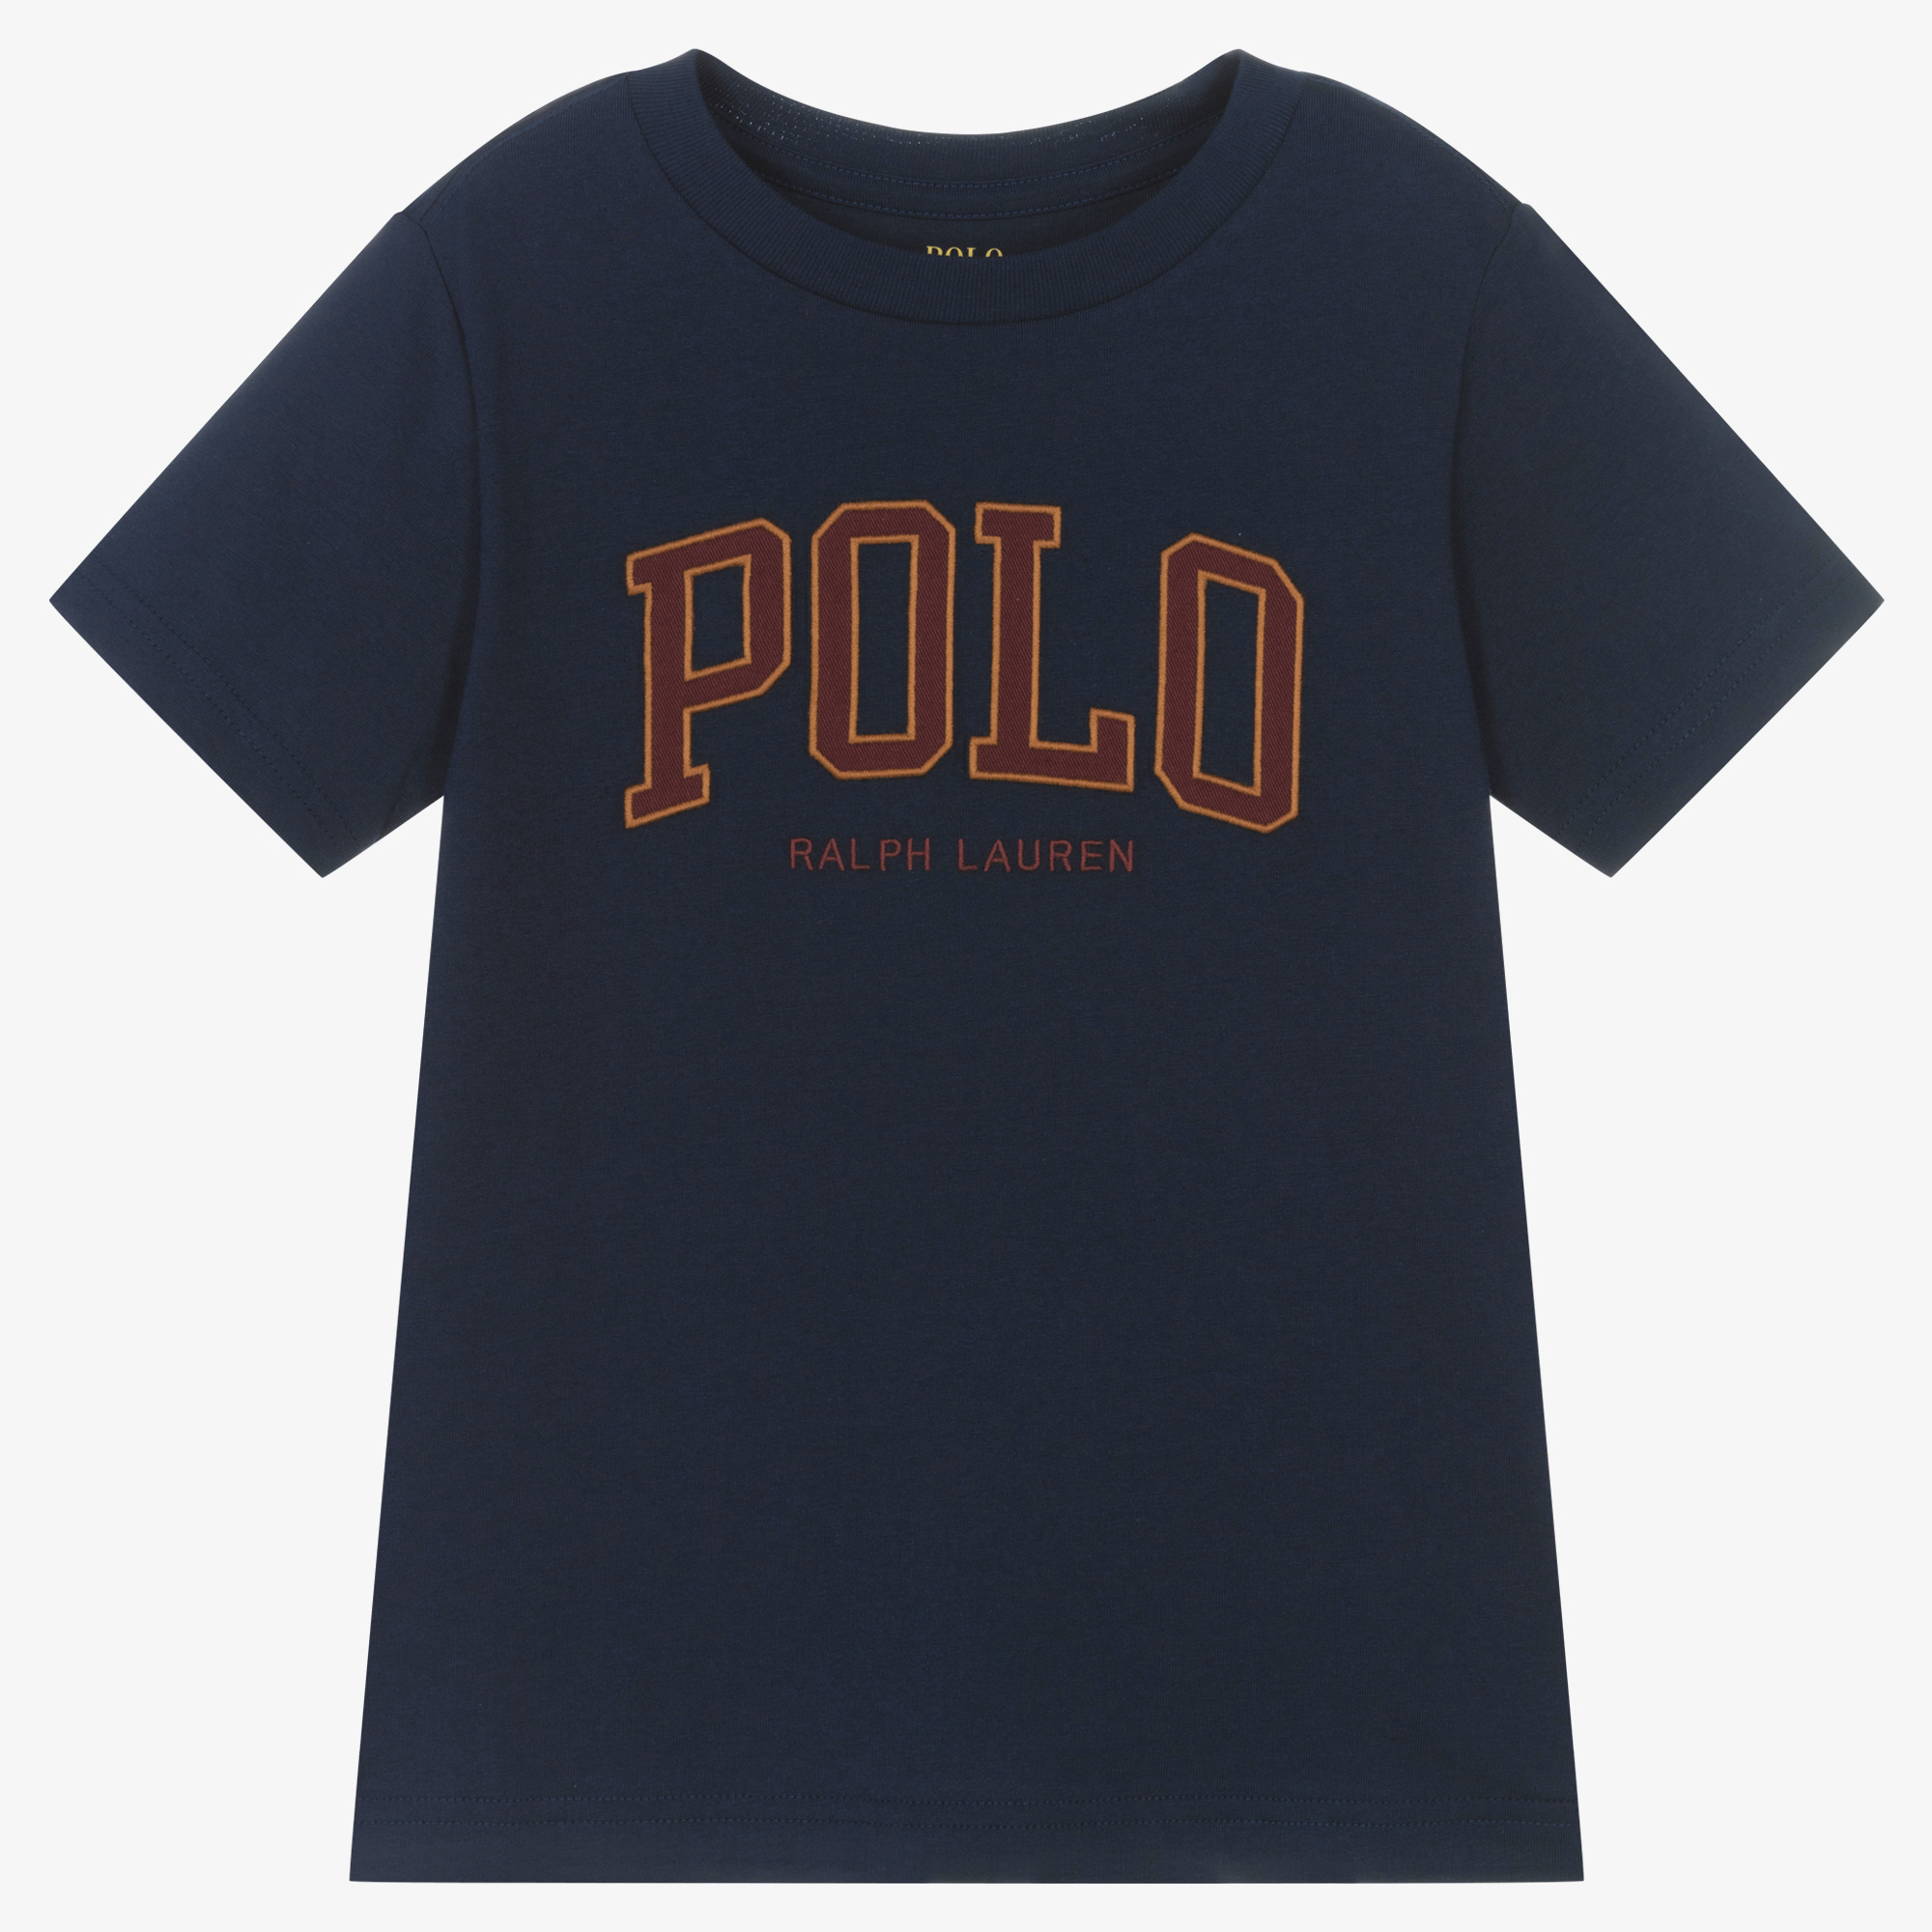 Polo Ralph Lauren - Navy Blue Polo Bear T-Shirt | Childrensalon